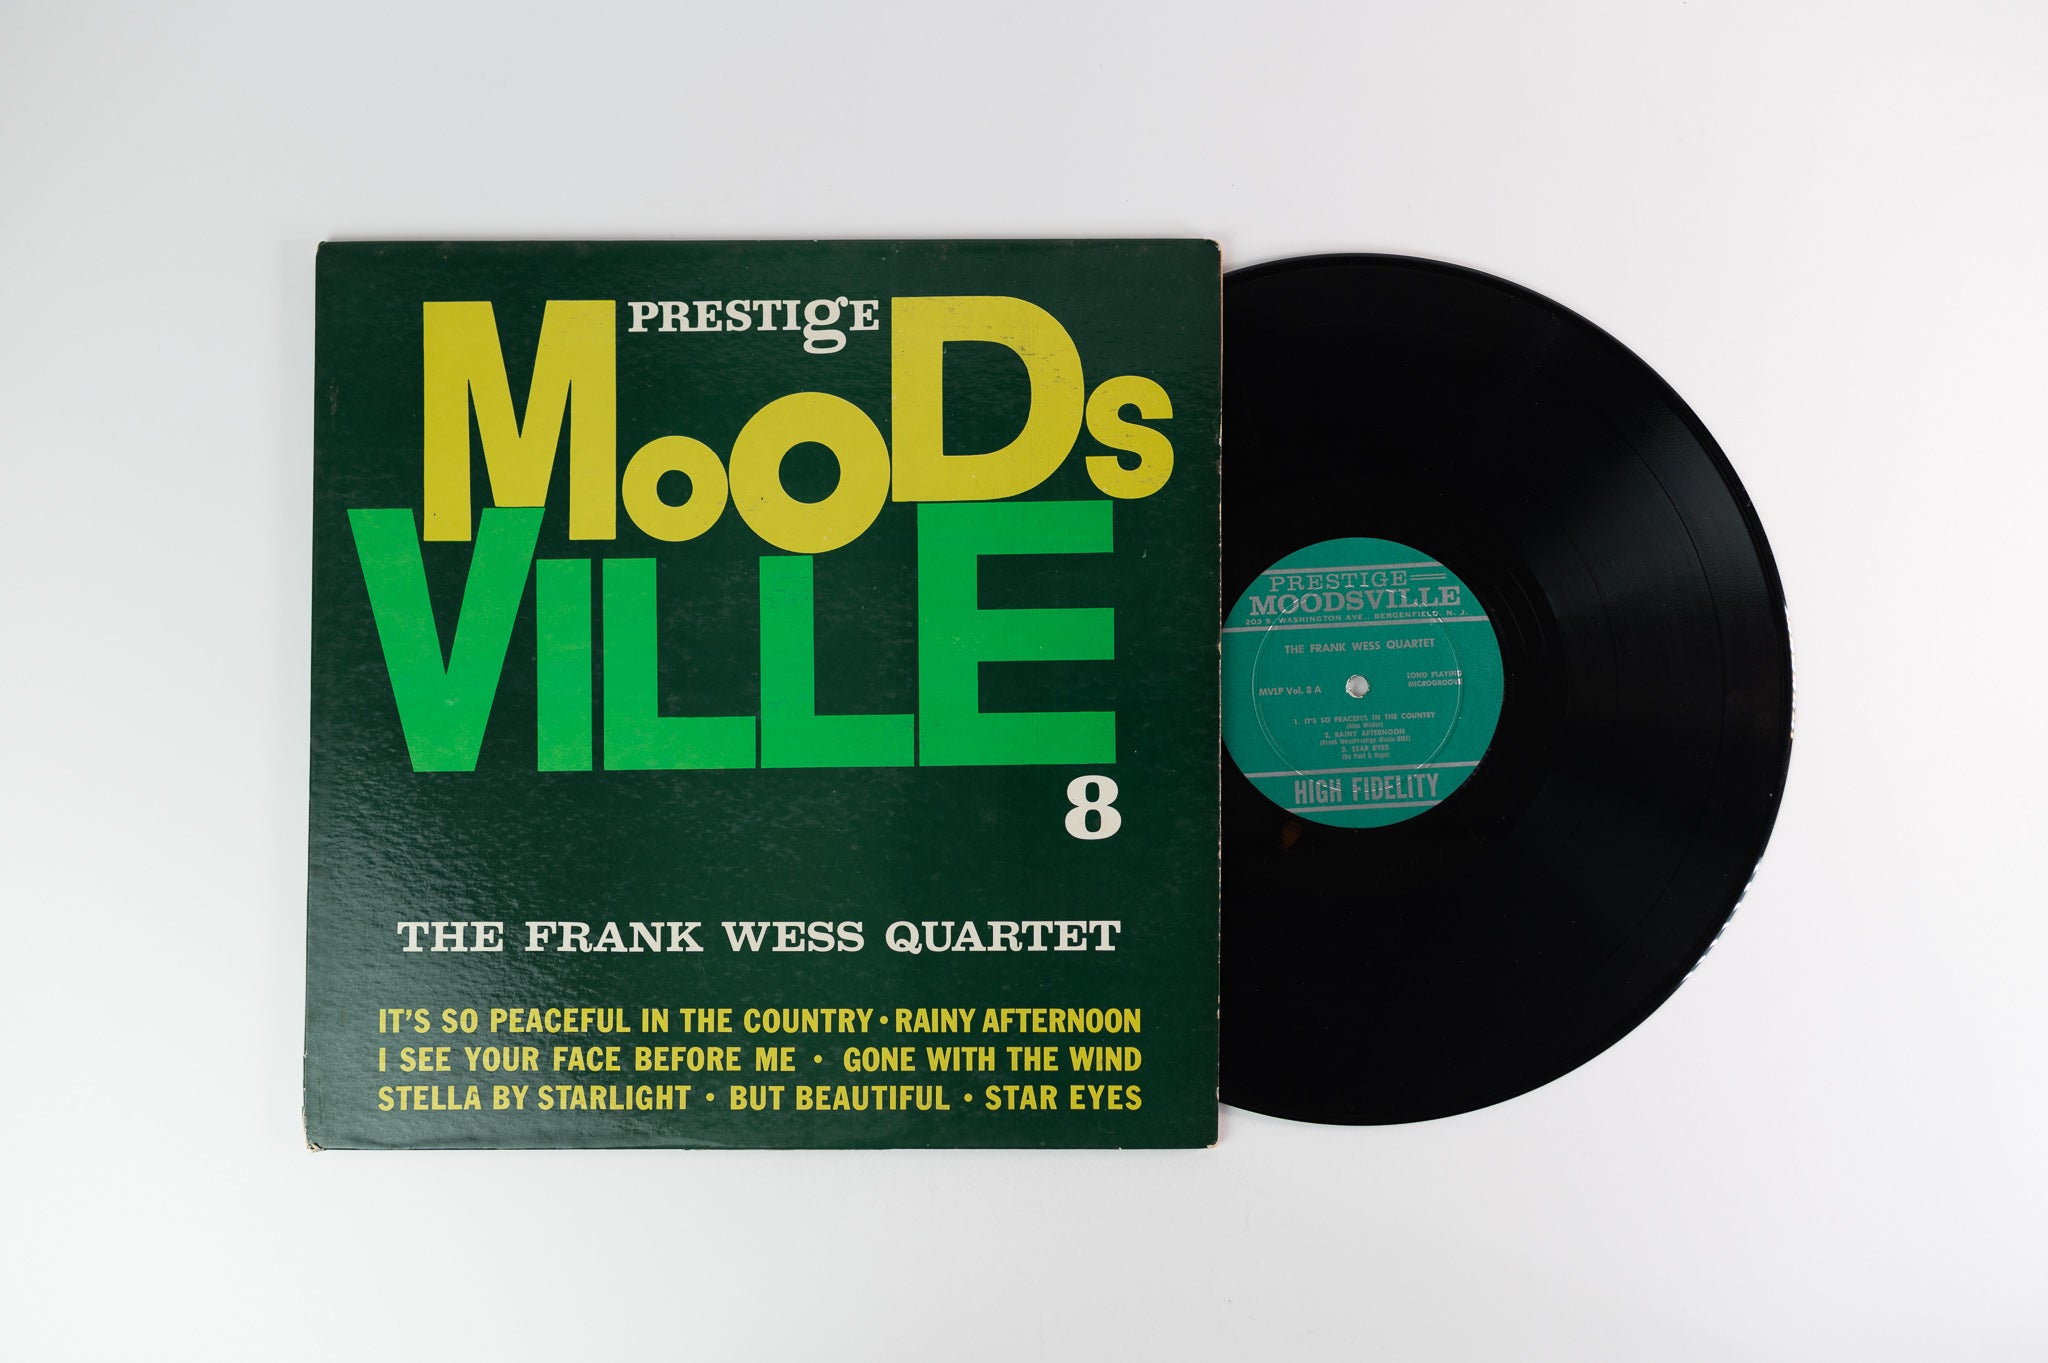 The Frank Wess Quartet - The Frank Wess Quartet on Moodsville